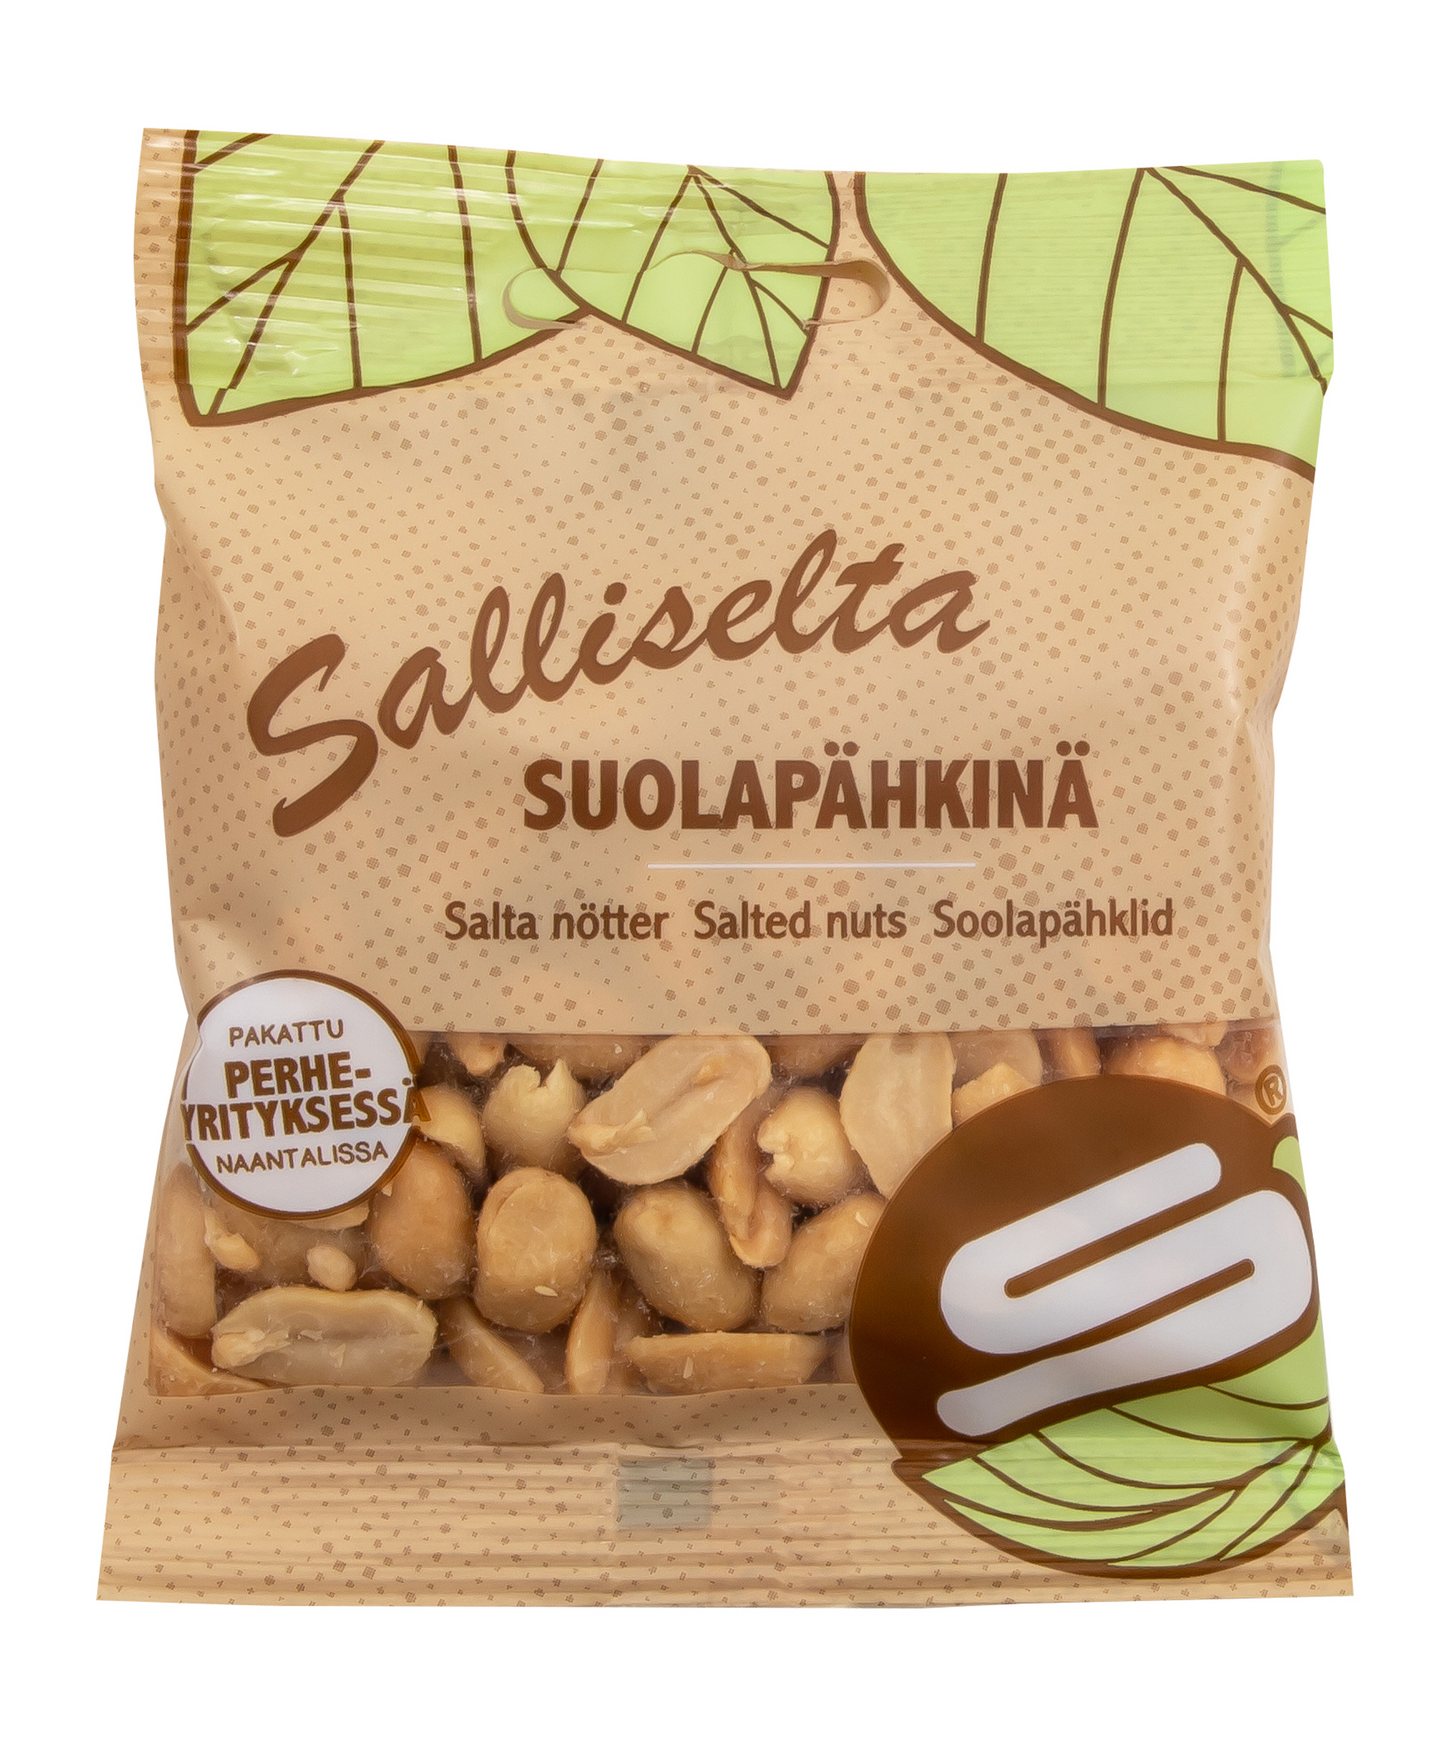 Salliselta Suolapähkinä 50g